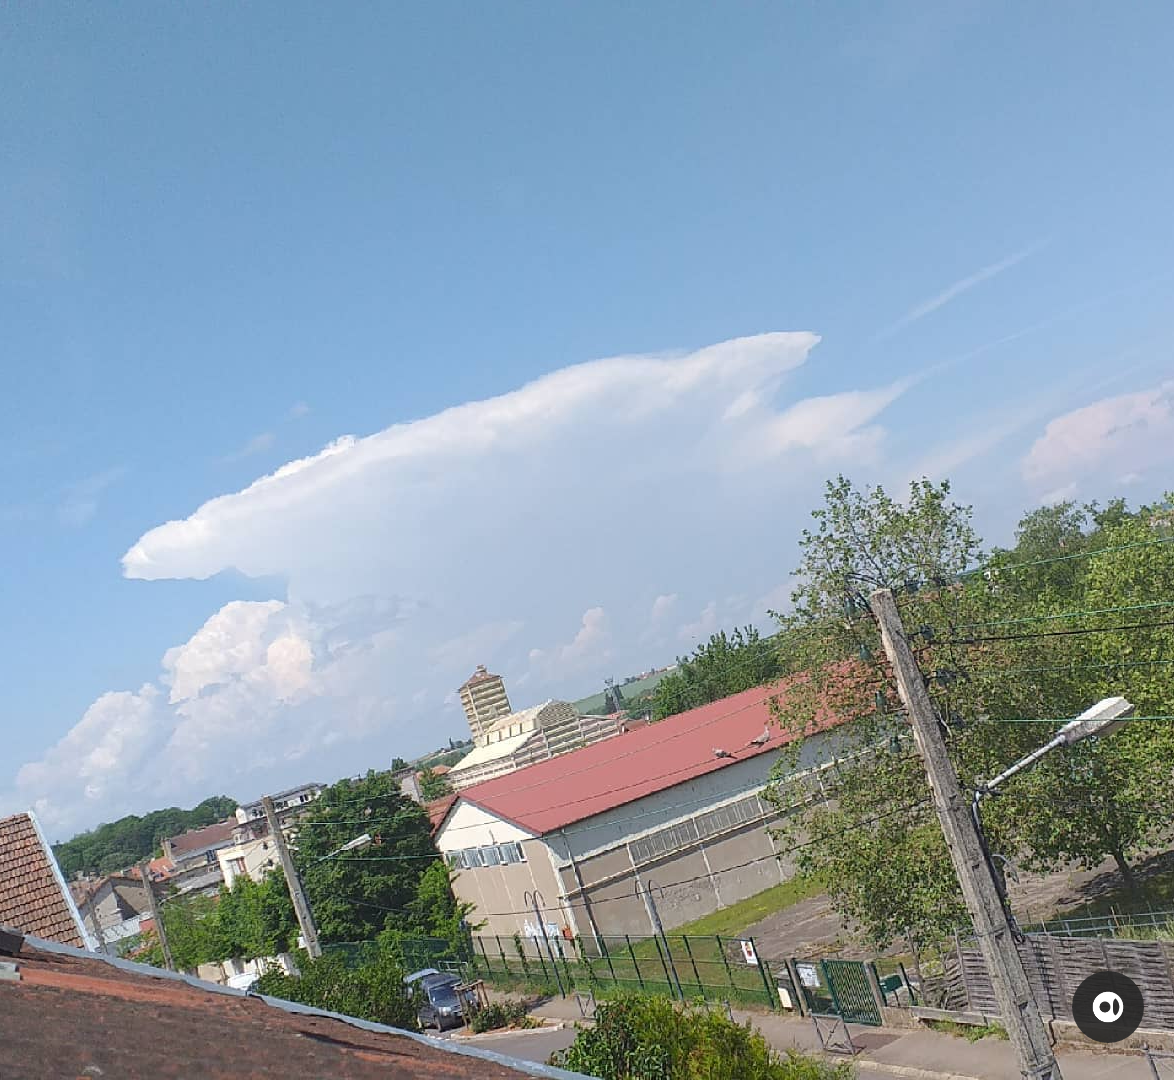 orage qui s'est formé au dessus de St Menehould dans la Marne. - 04/06/2021 12:30 - Enzo Krebs